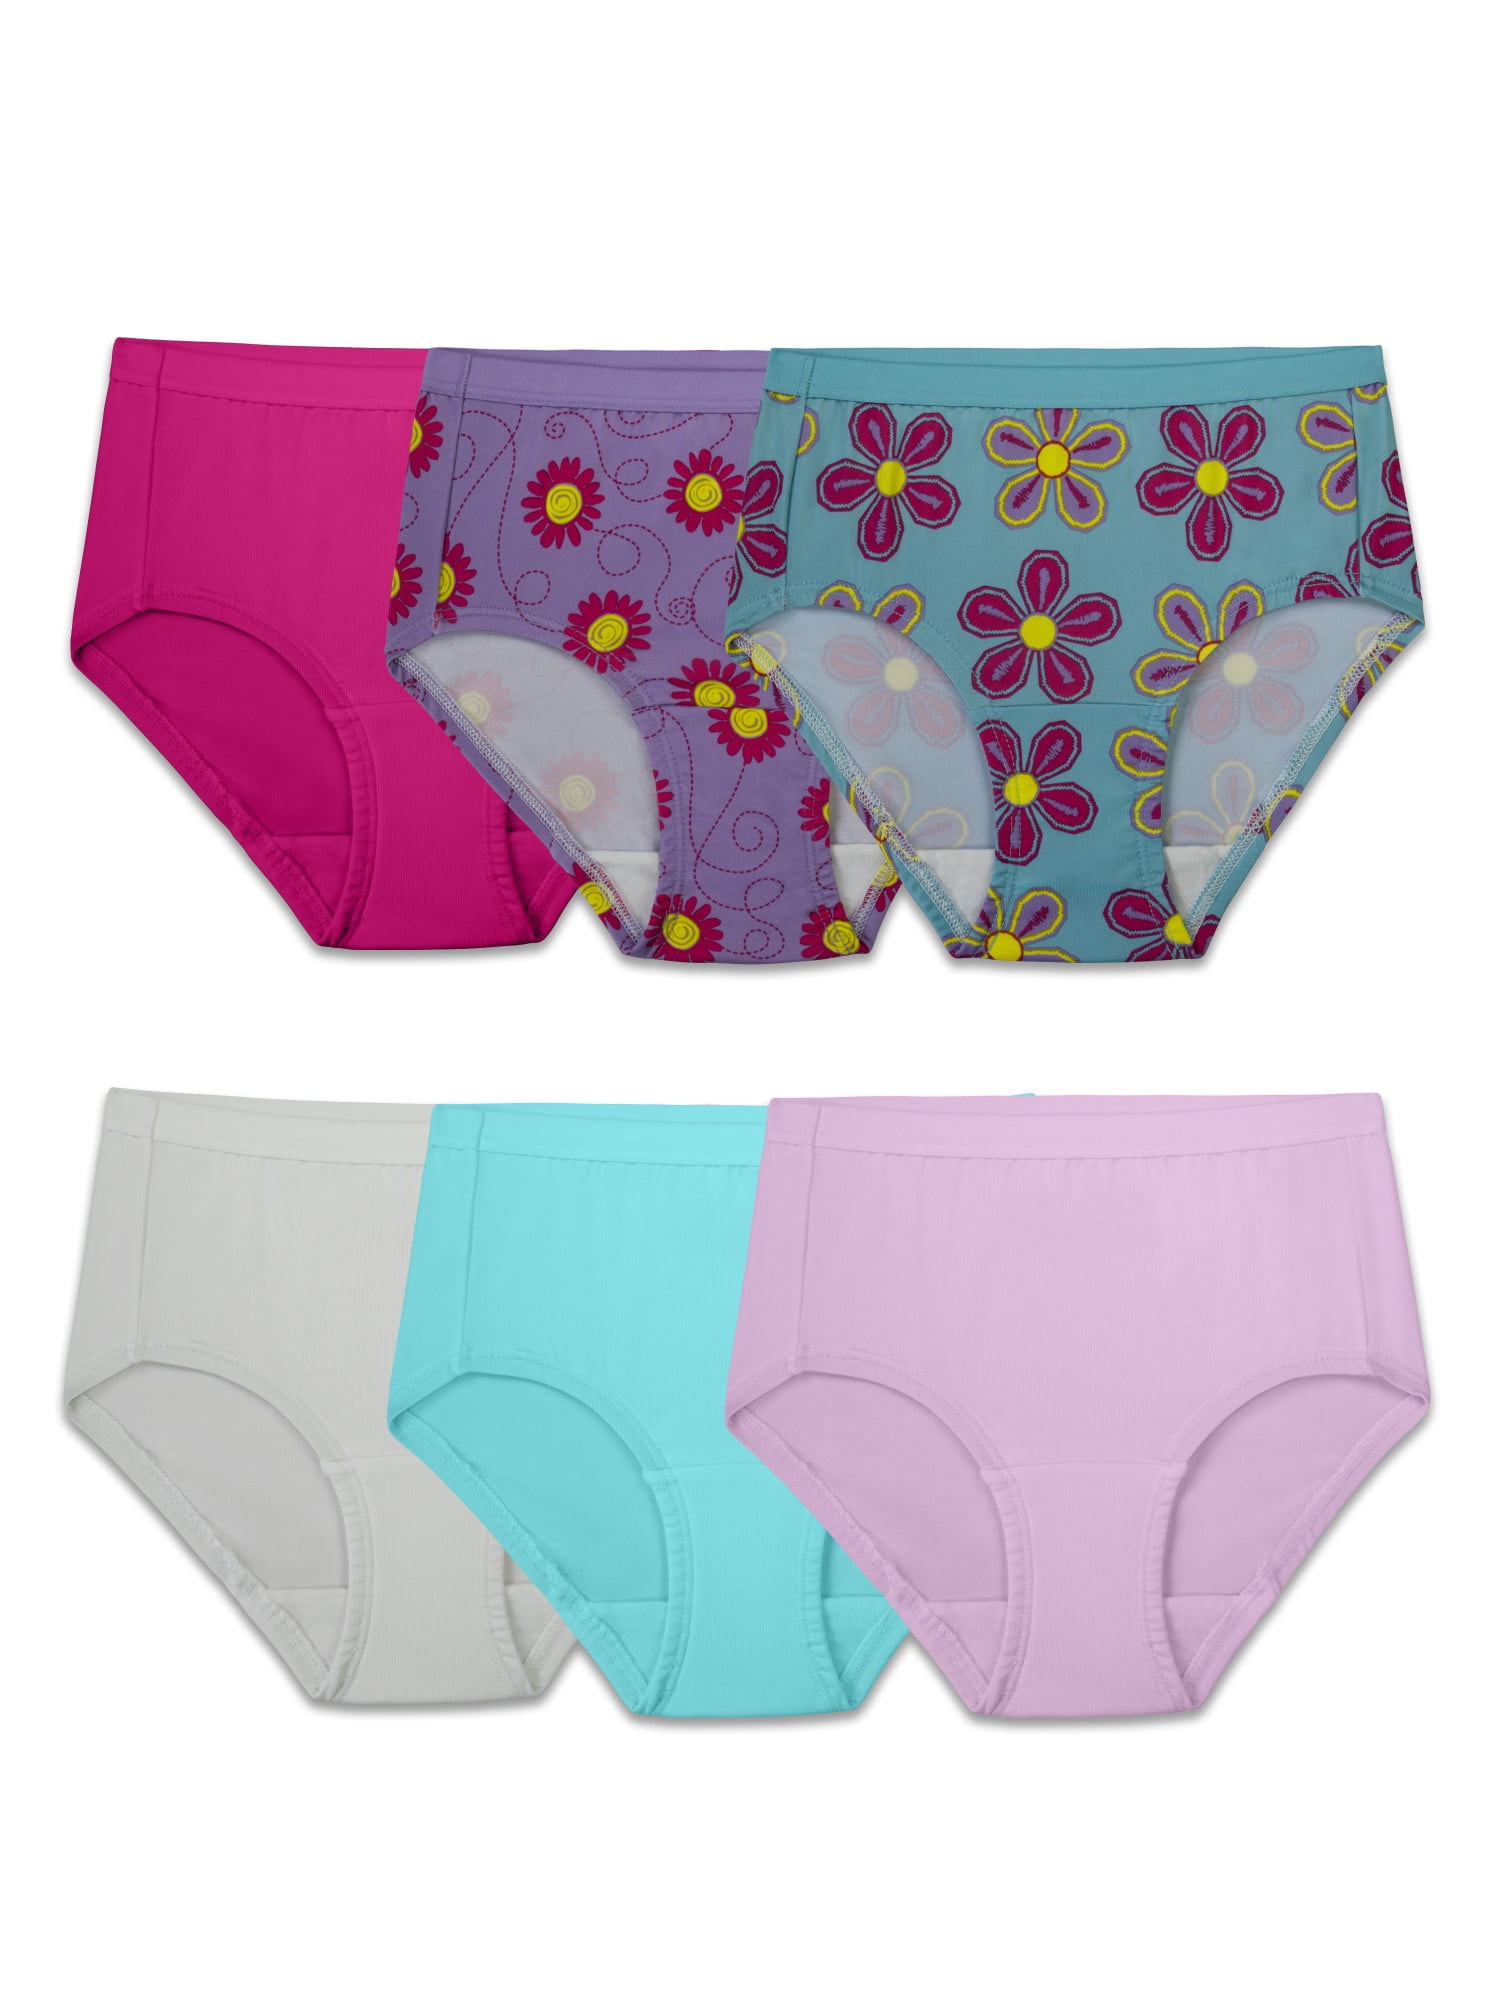 Fruit of the Loom ~ Girls Tagless 14-Pair Underwear Briefs Cotton ~ Size 14 